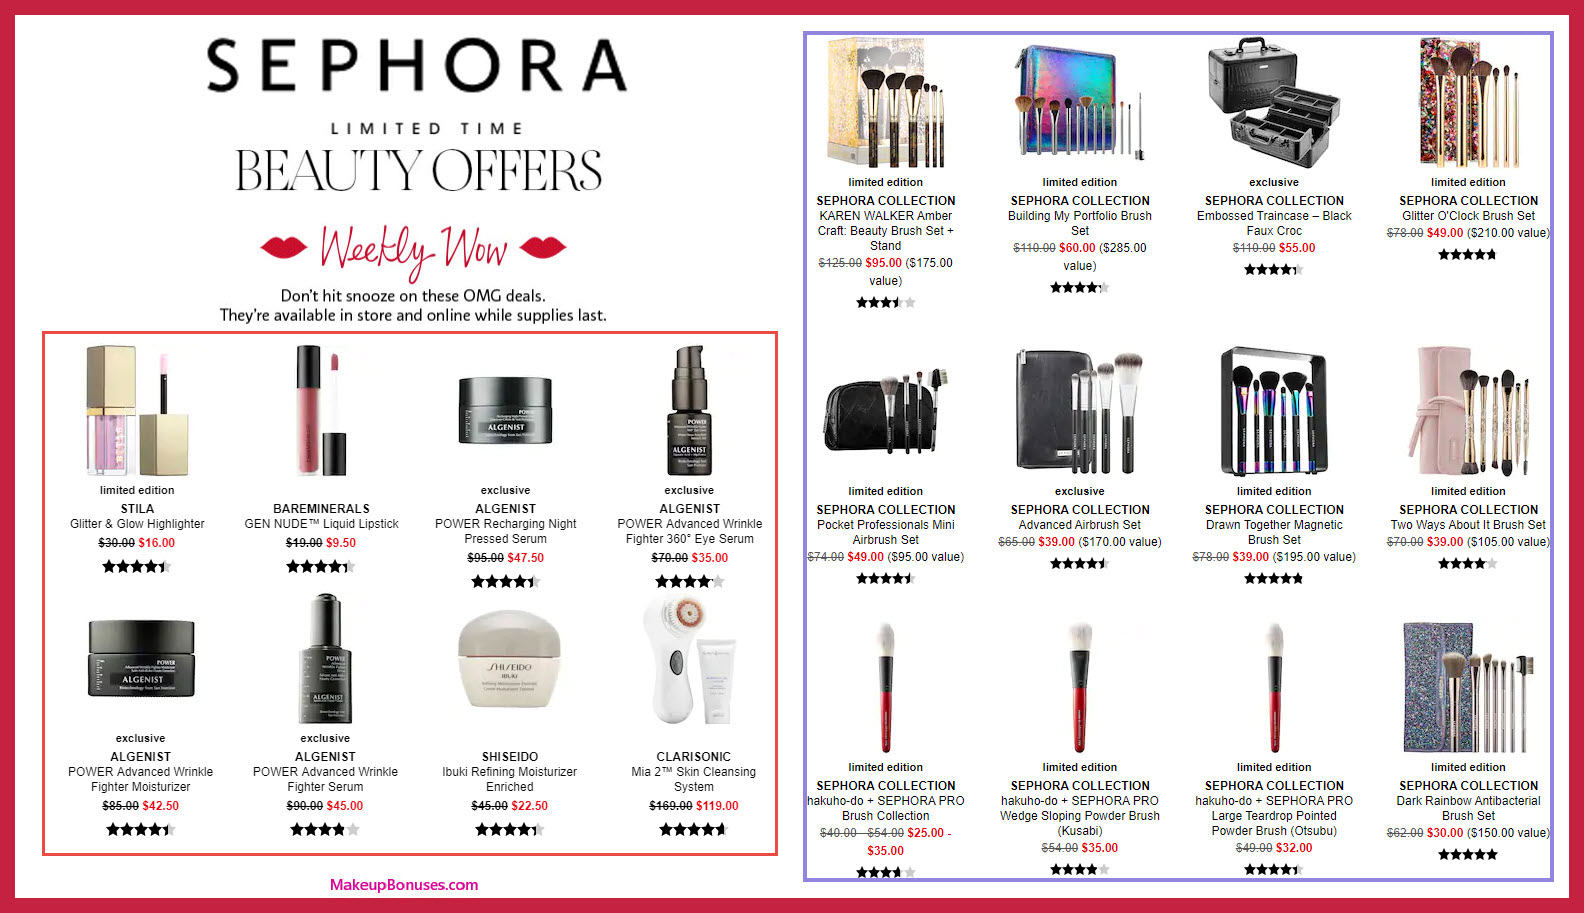 Sephora Discount Offers - MakeupBonuses.com